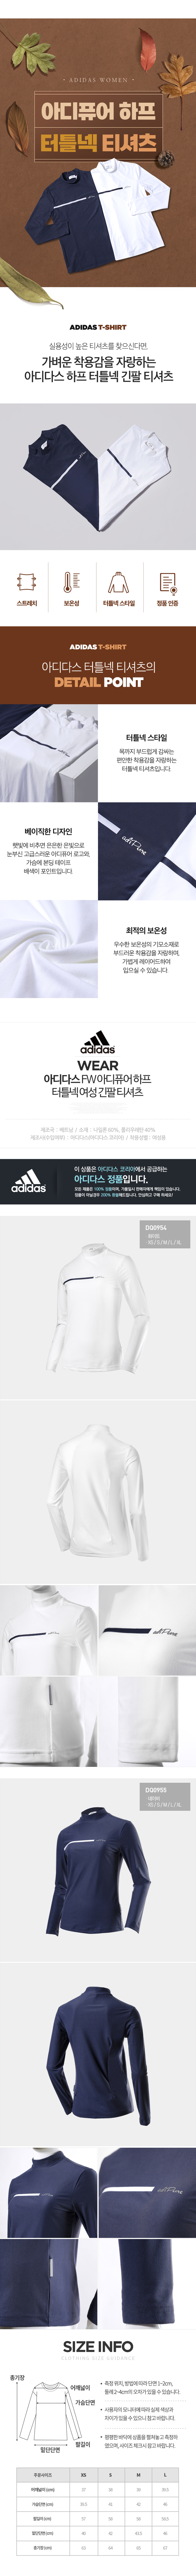 adidas_adipure_w_tshirt_20.jpg